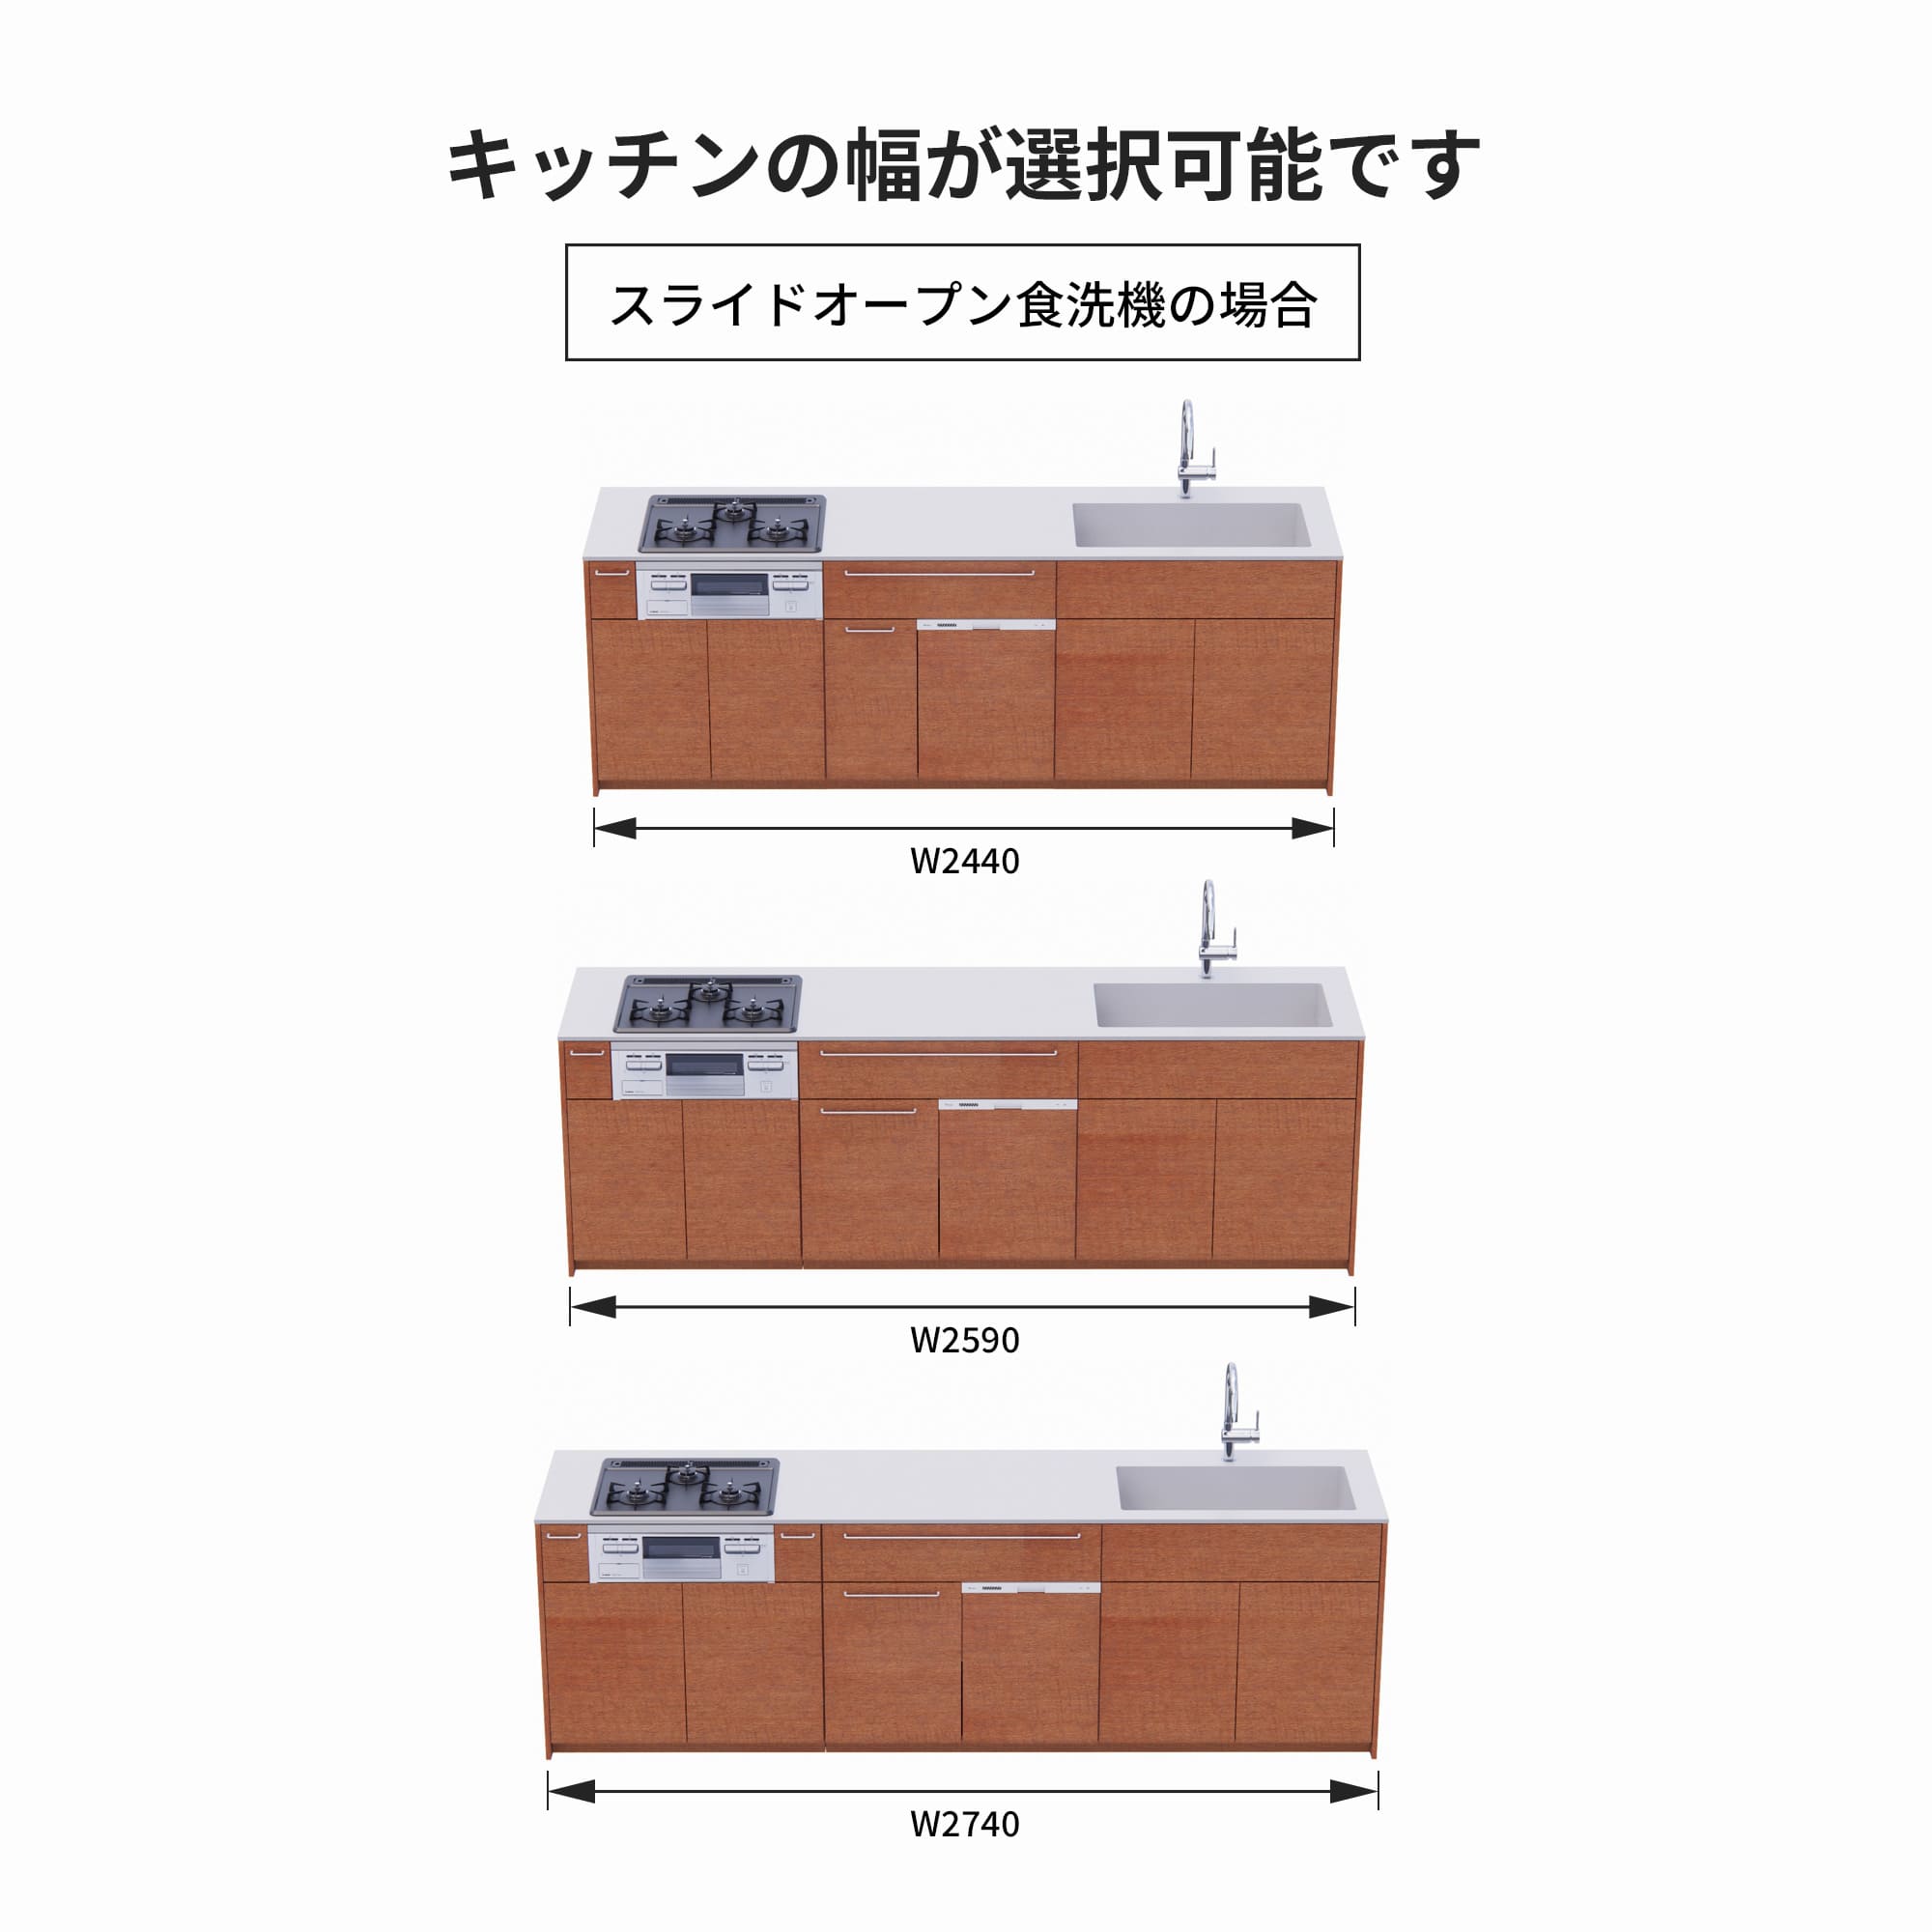 木製システムキッチン 対面型 W2440～2740・コンロあり / オーブンなし / 食洗機あり KB-KC022-44-G183 スライドオープンの場合